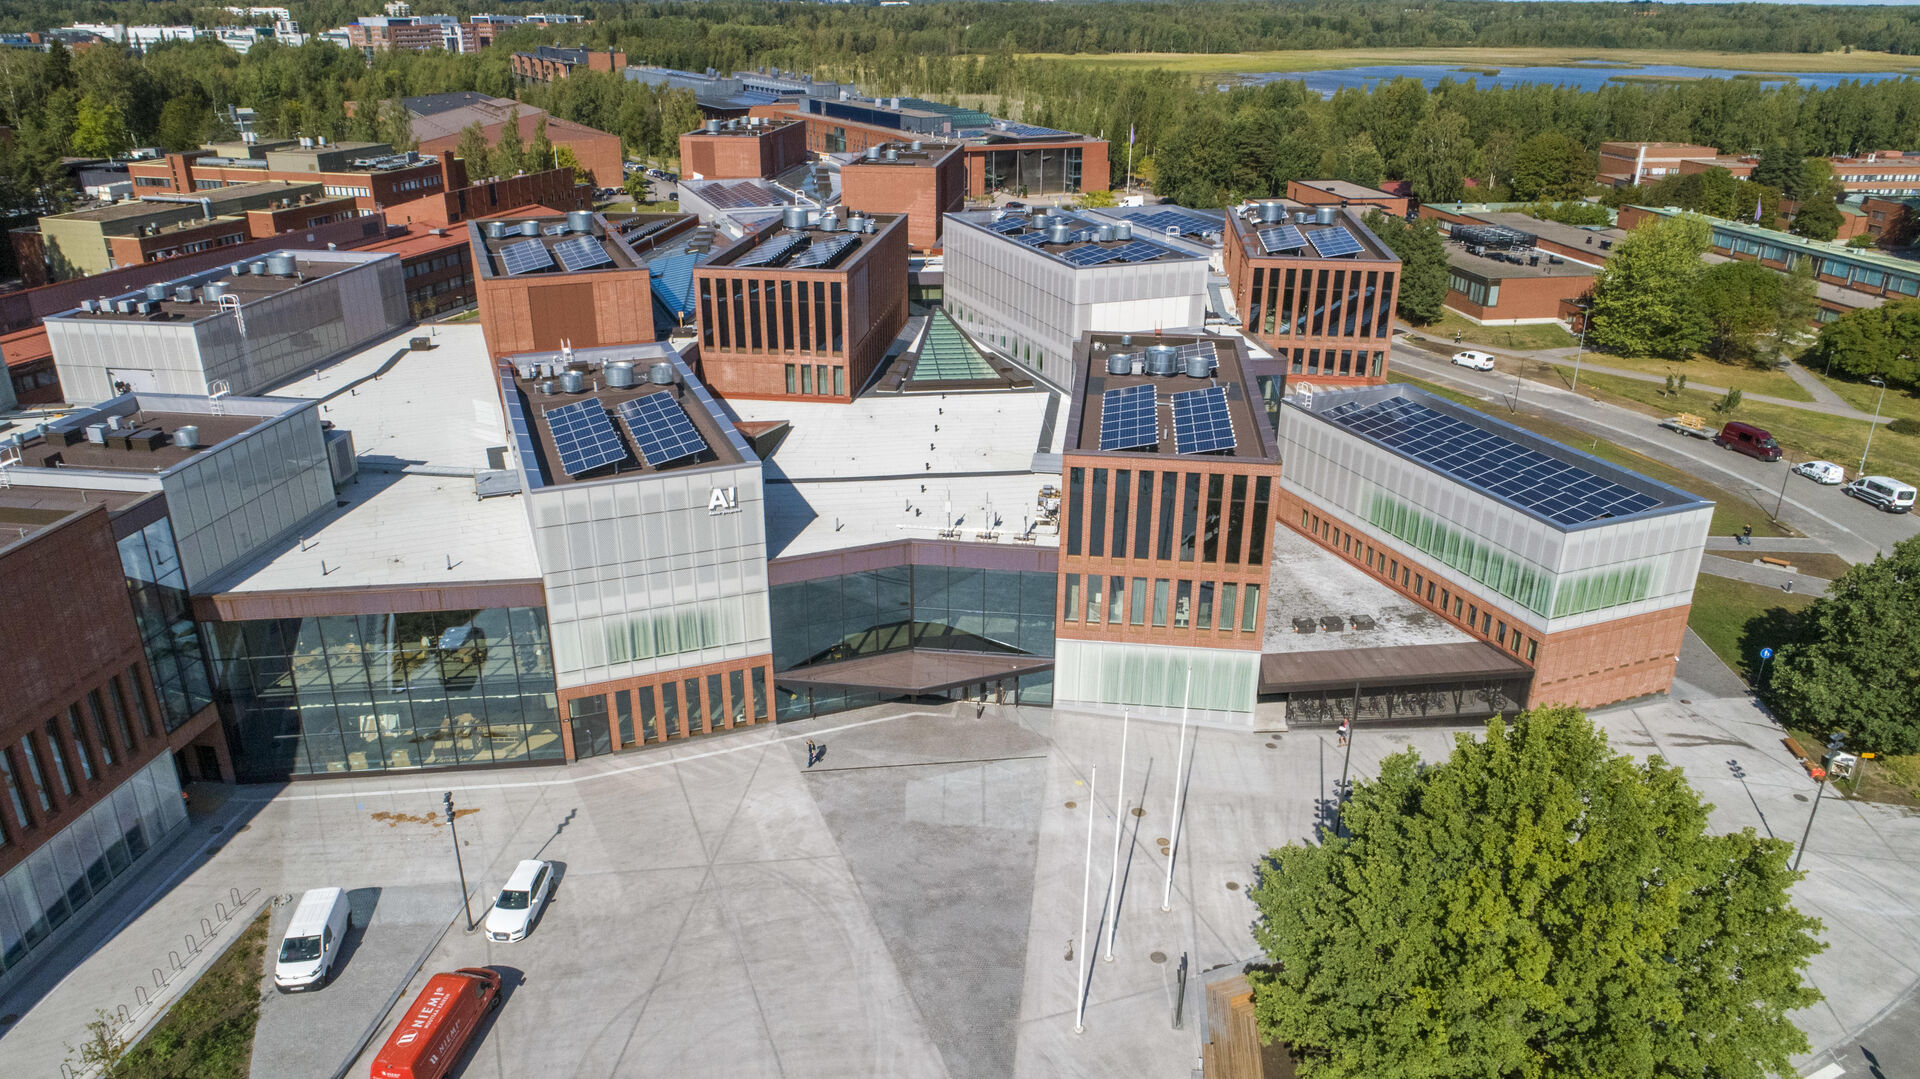 Dronefoto av Aalto University. Mange campusbygninger i rød murstein, betong og glass der man kan skimte trær og en innsjø i bakgrunnen.